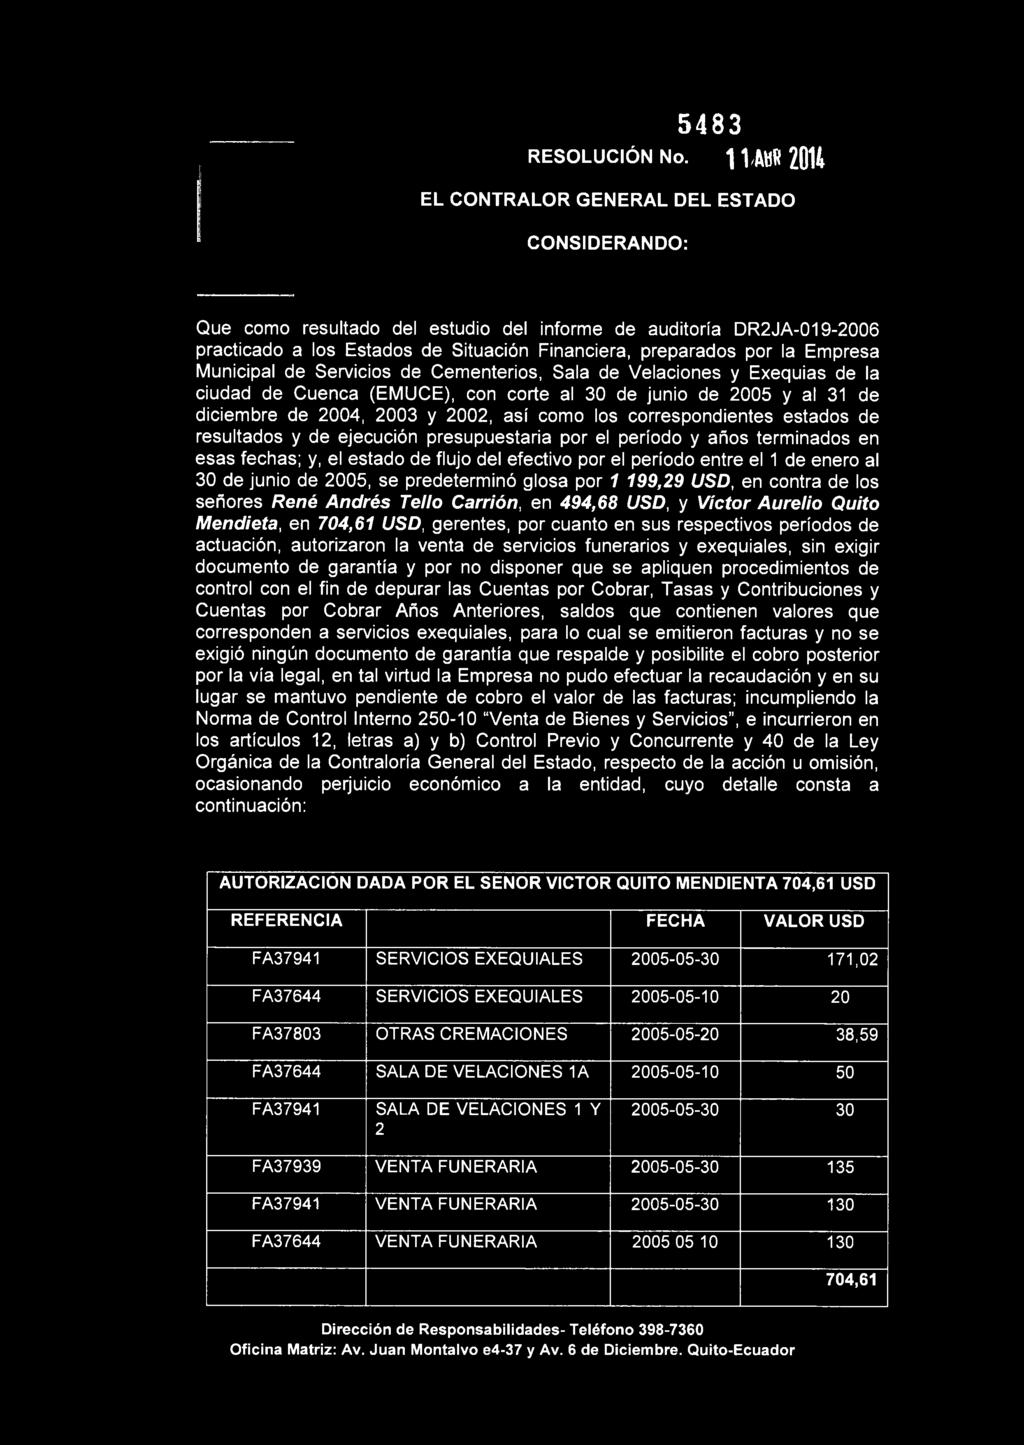 Empresa Municipal de Servicios de Cementerios, Sala de Velaciones y Exequias de la ciudad de Cuenca (EMUCE), con corte al 30 de junio de 2005 y al 31 de diciembre de 2004, 2003 y 2002, así como los